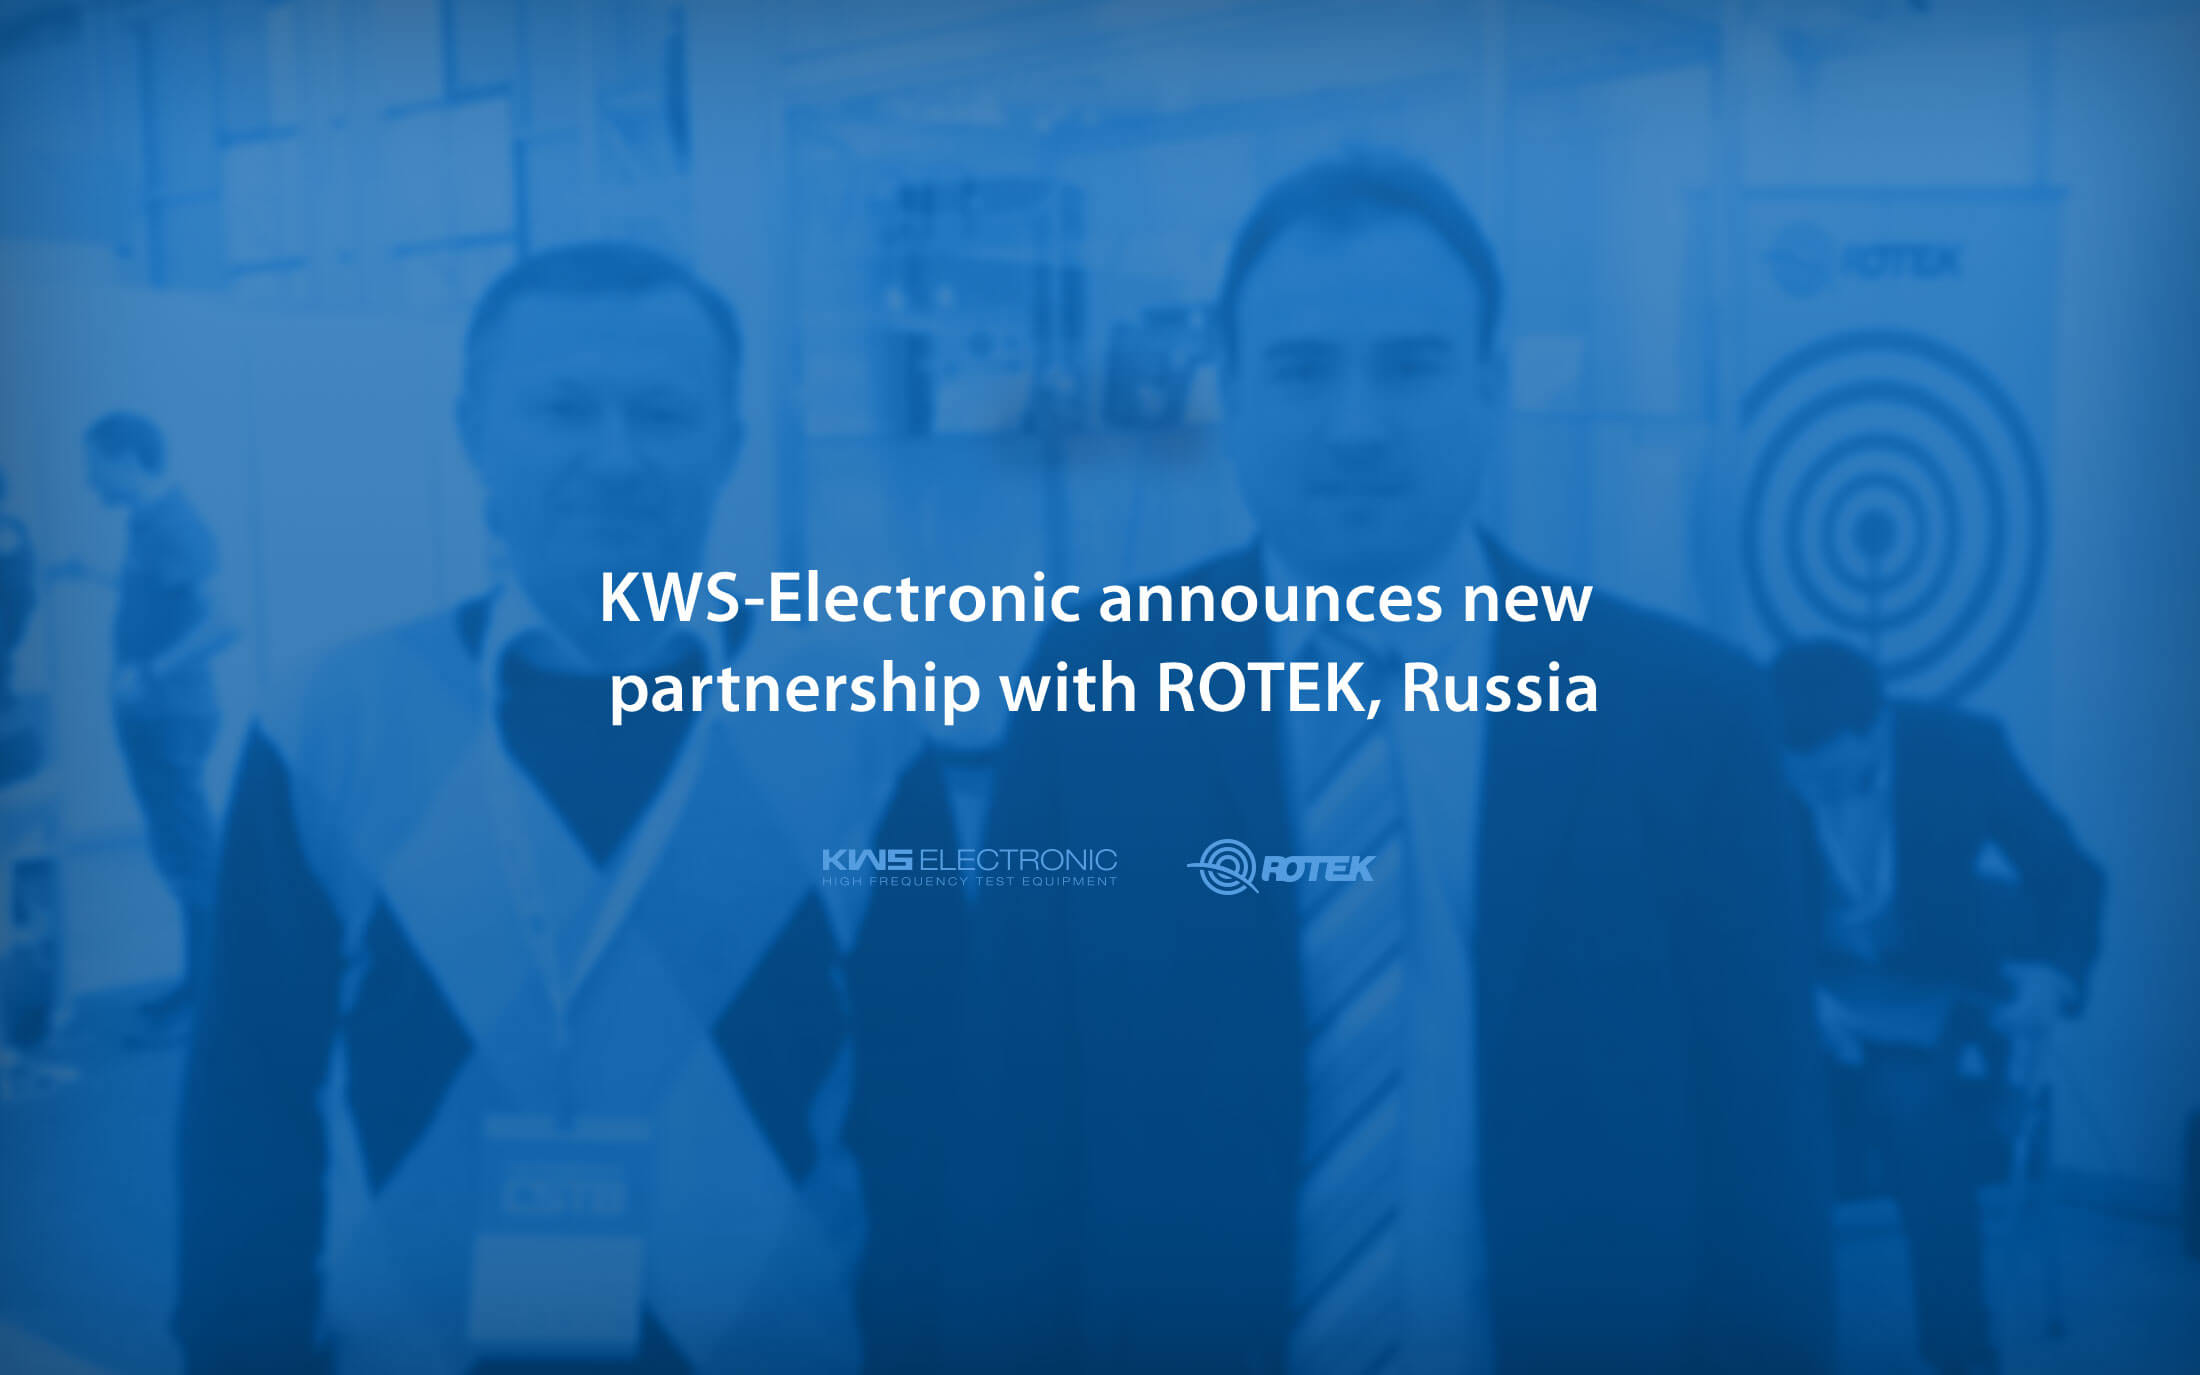 kws electronic news 2017: new partnership with rotek